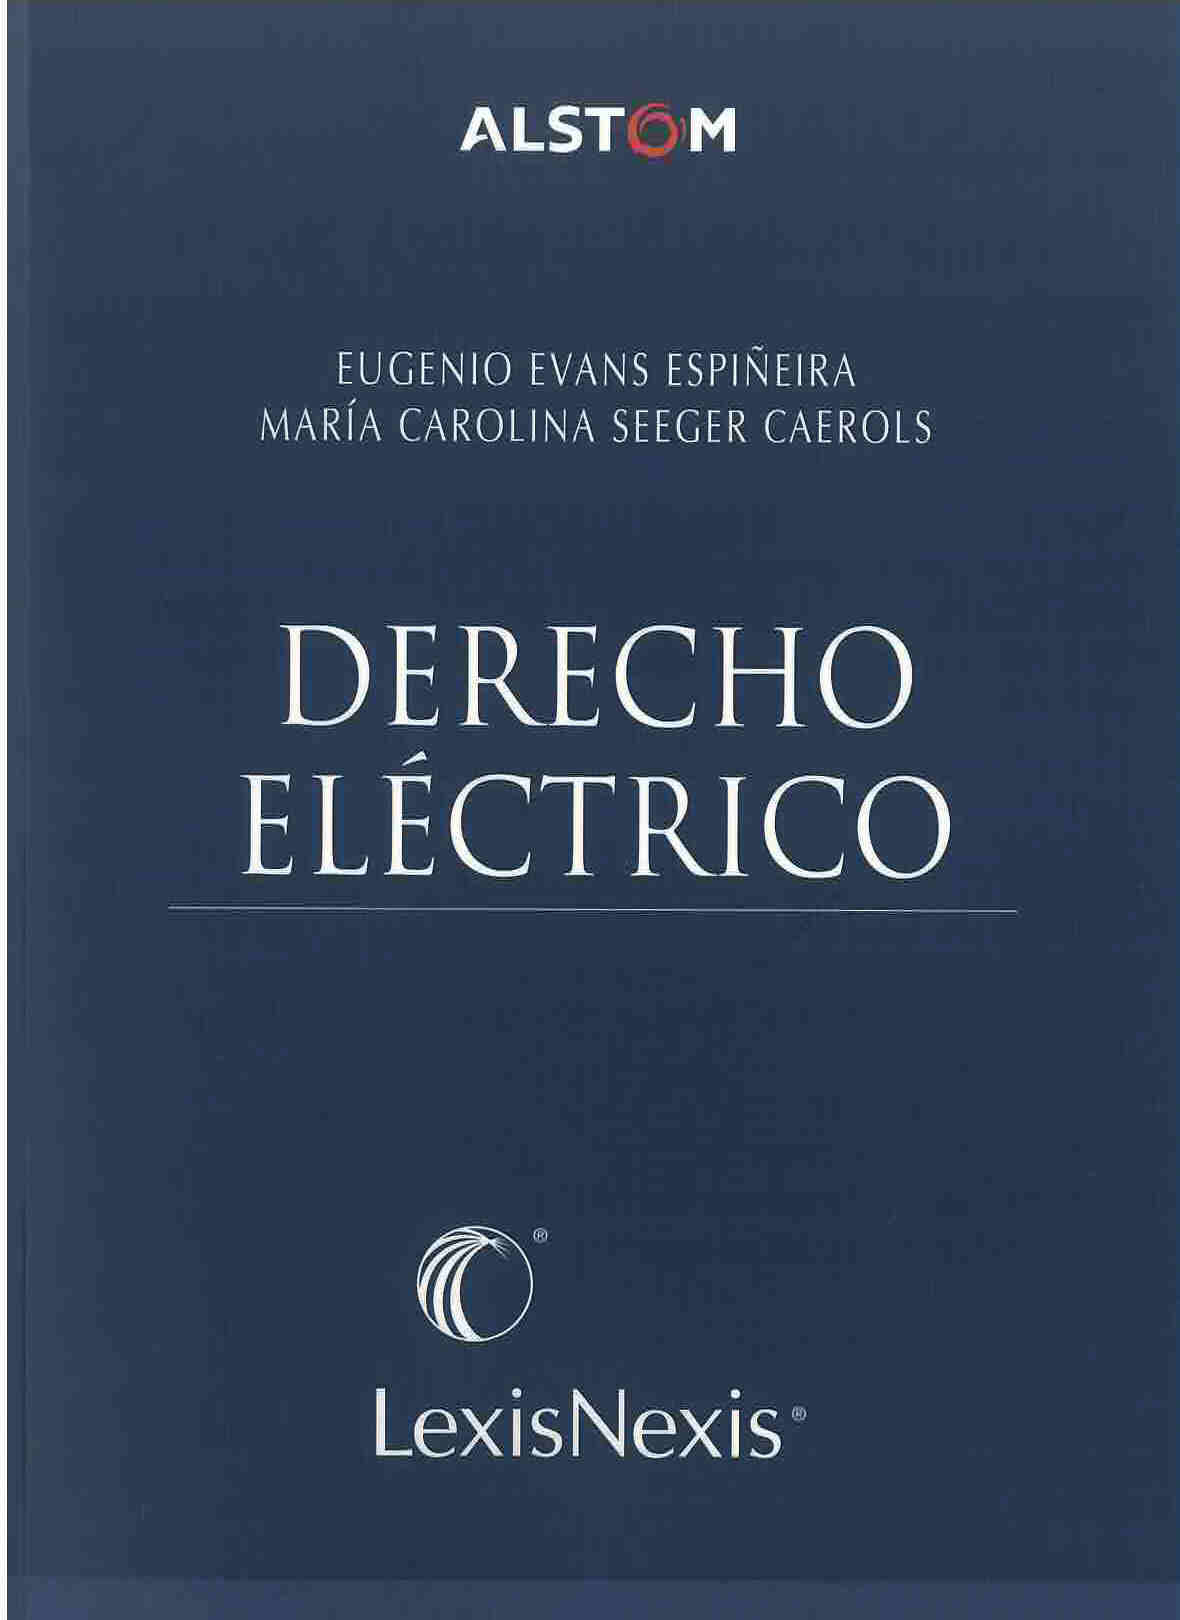 Derecho eléctrico